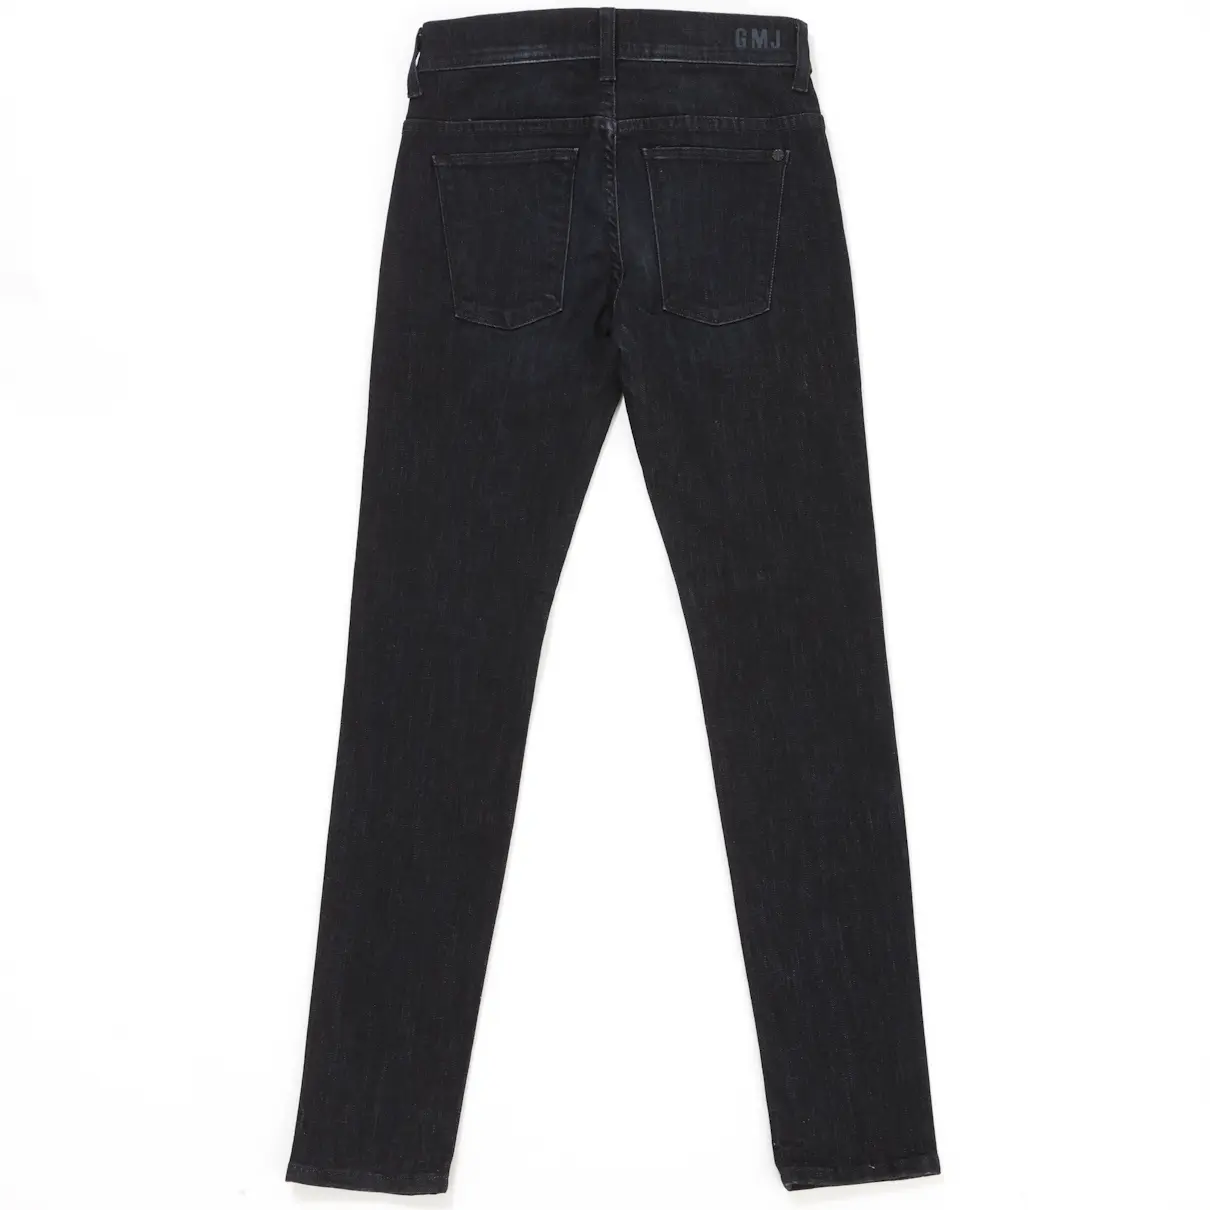 Hudson Slim jeans for sale